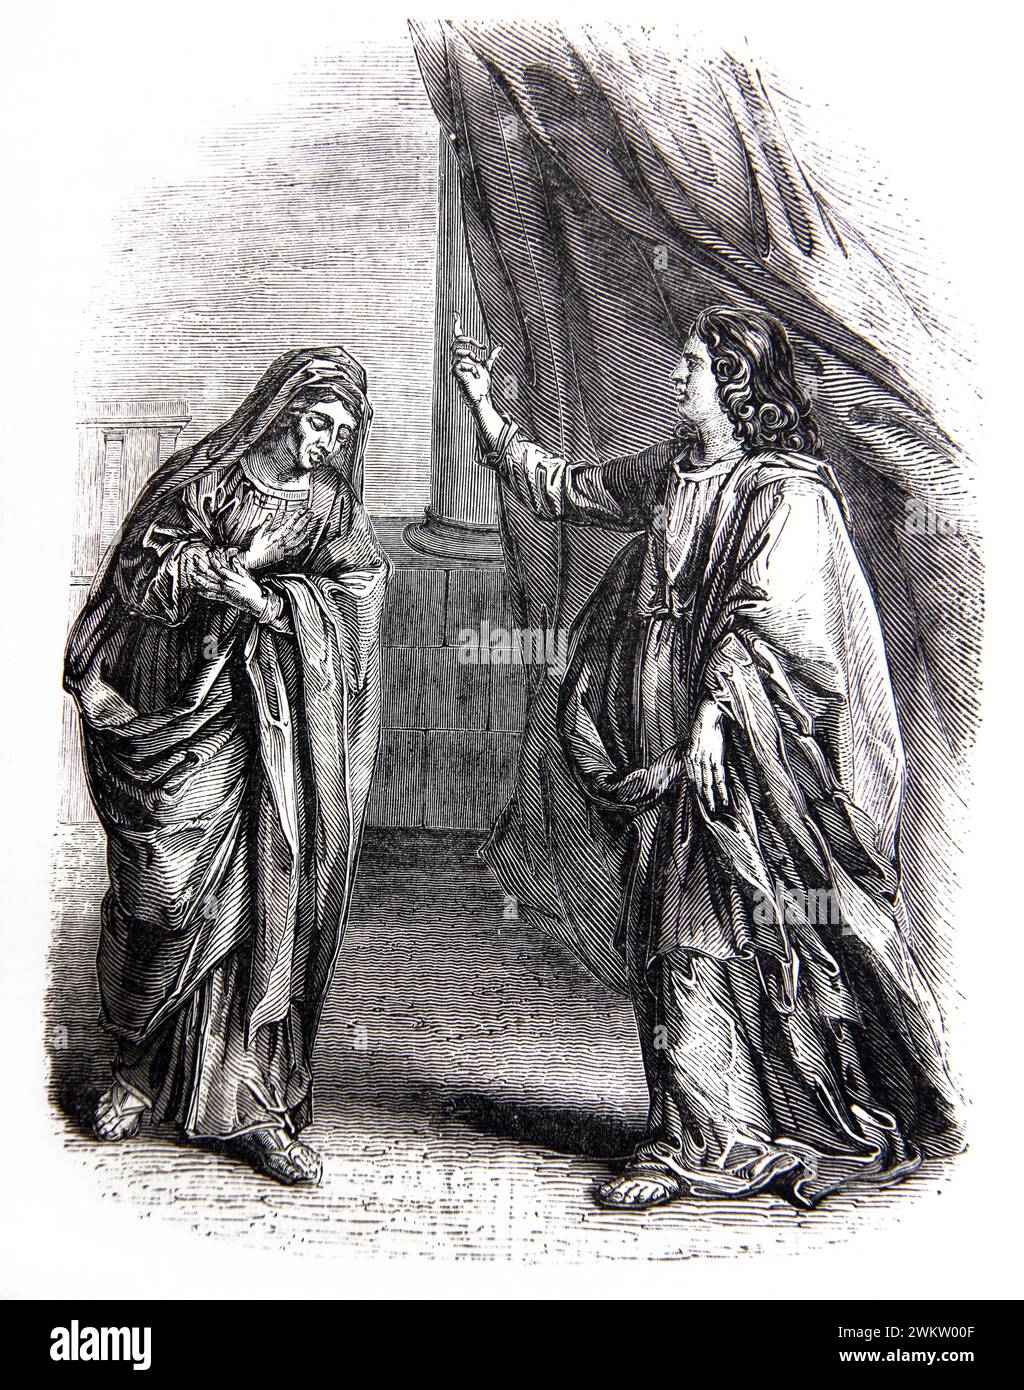 Illustration de Salomon et Bathsheba - Bathsheba (épouse du roi david mère au roi Salomon) demandant au roi Salomon de laisser Abishag le Shunammite être Banque D'Images